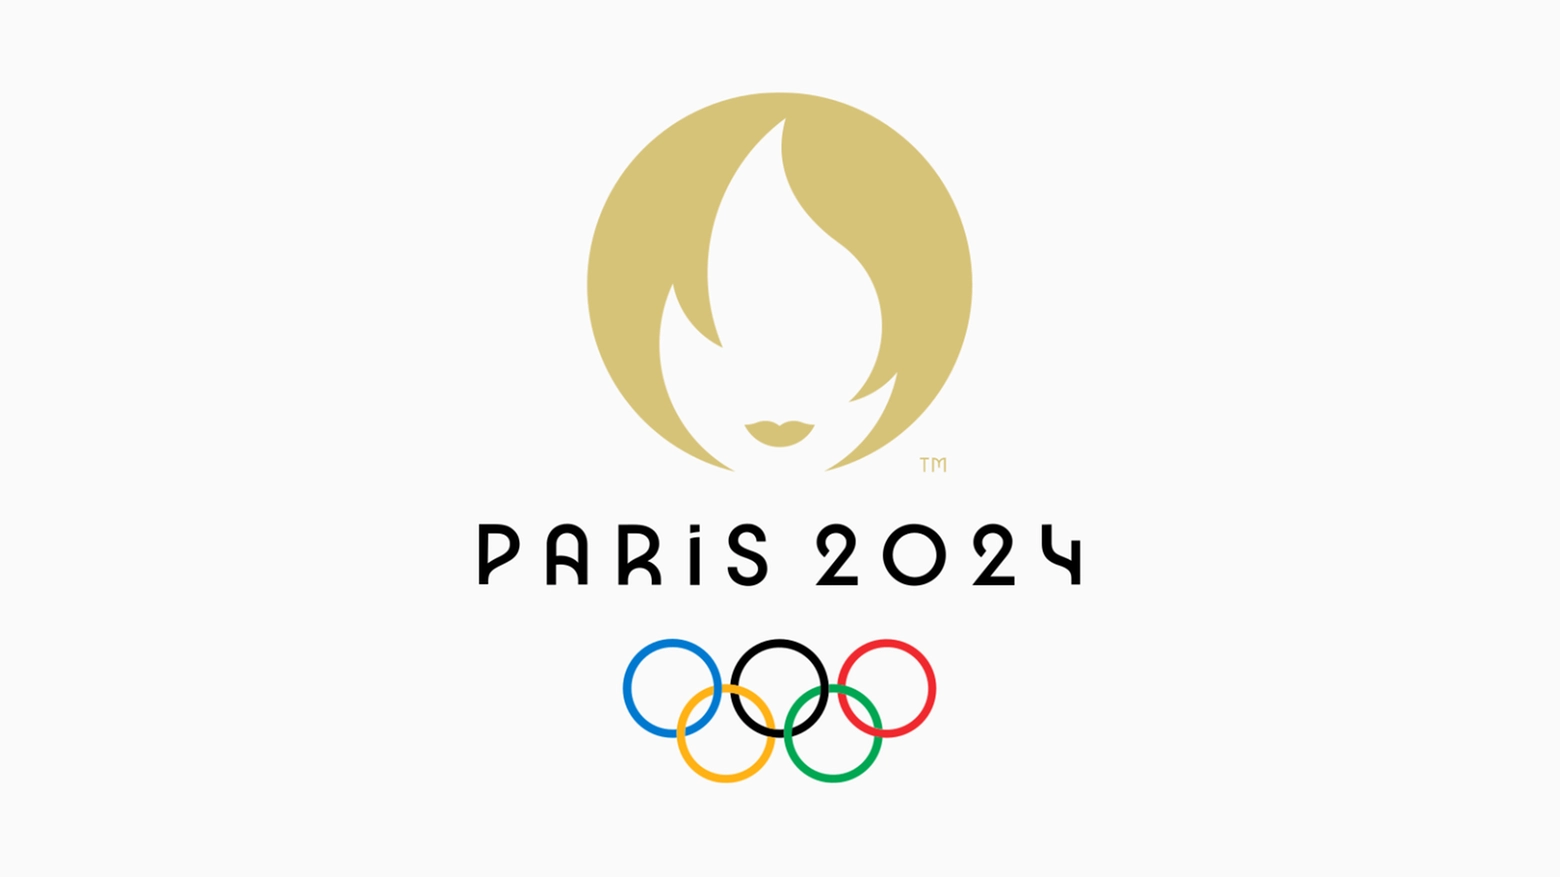 Il volto dei Giochi è Marianne, un solo emblema che sta a rappresentare diversi e iconici simboli della tradizione francese